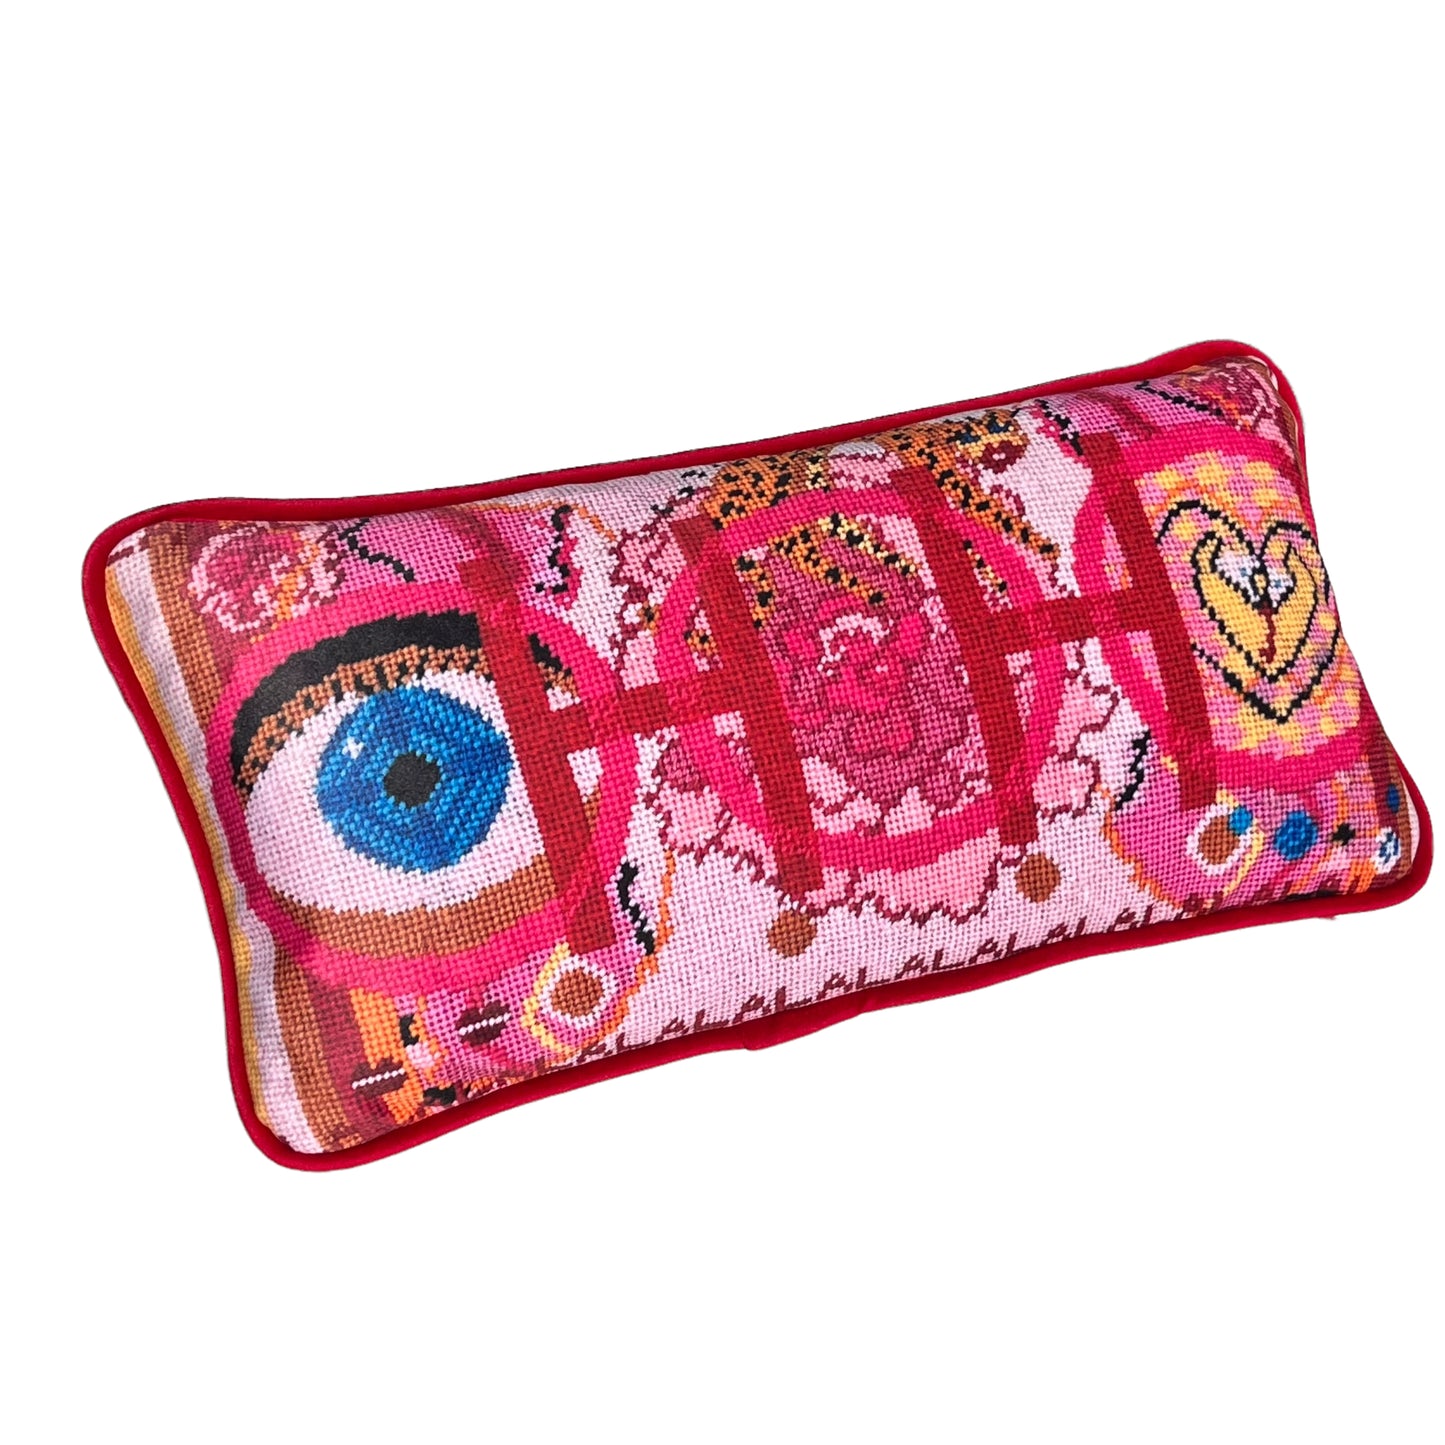 pink based velvet pillow with blue eye, cheetah, lips, snakes